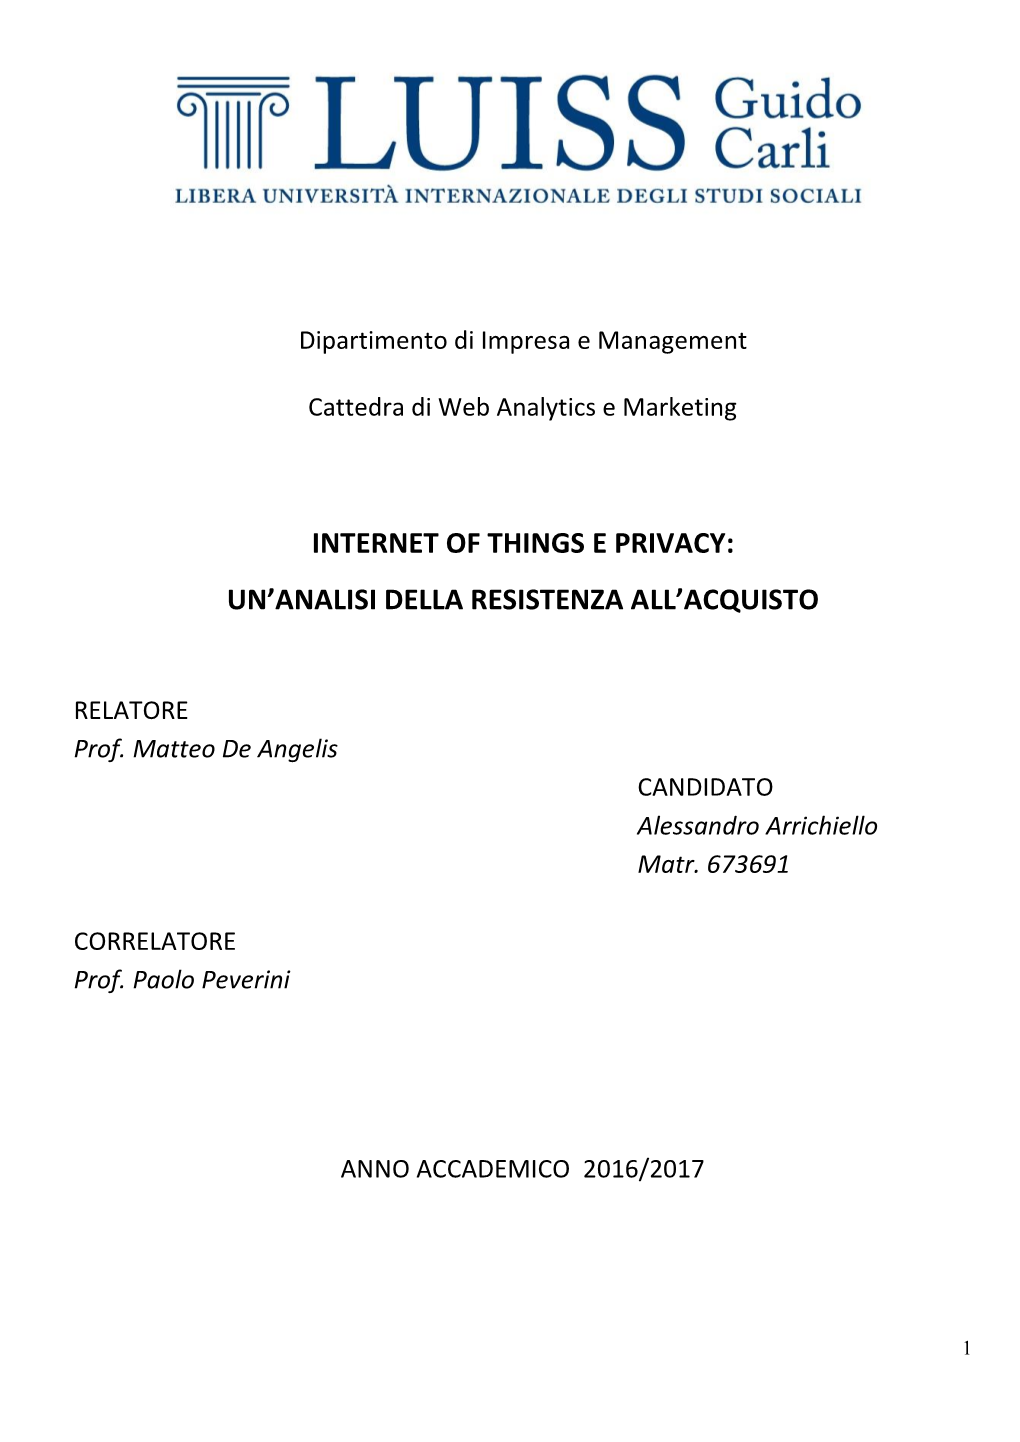 Internet of Things E Privacy: Un'analisi Della Resistenza All'acquisto